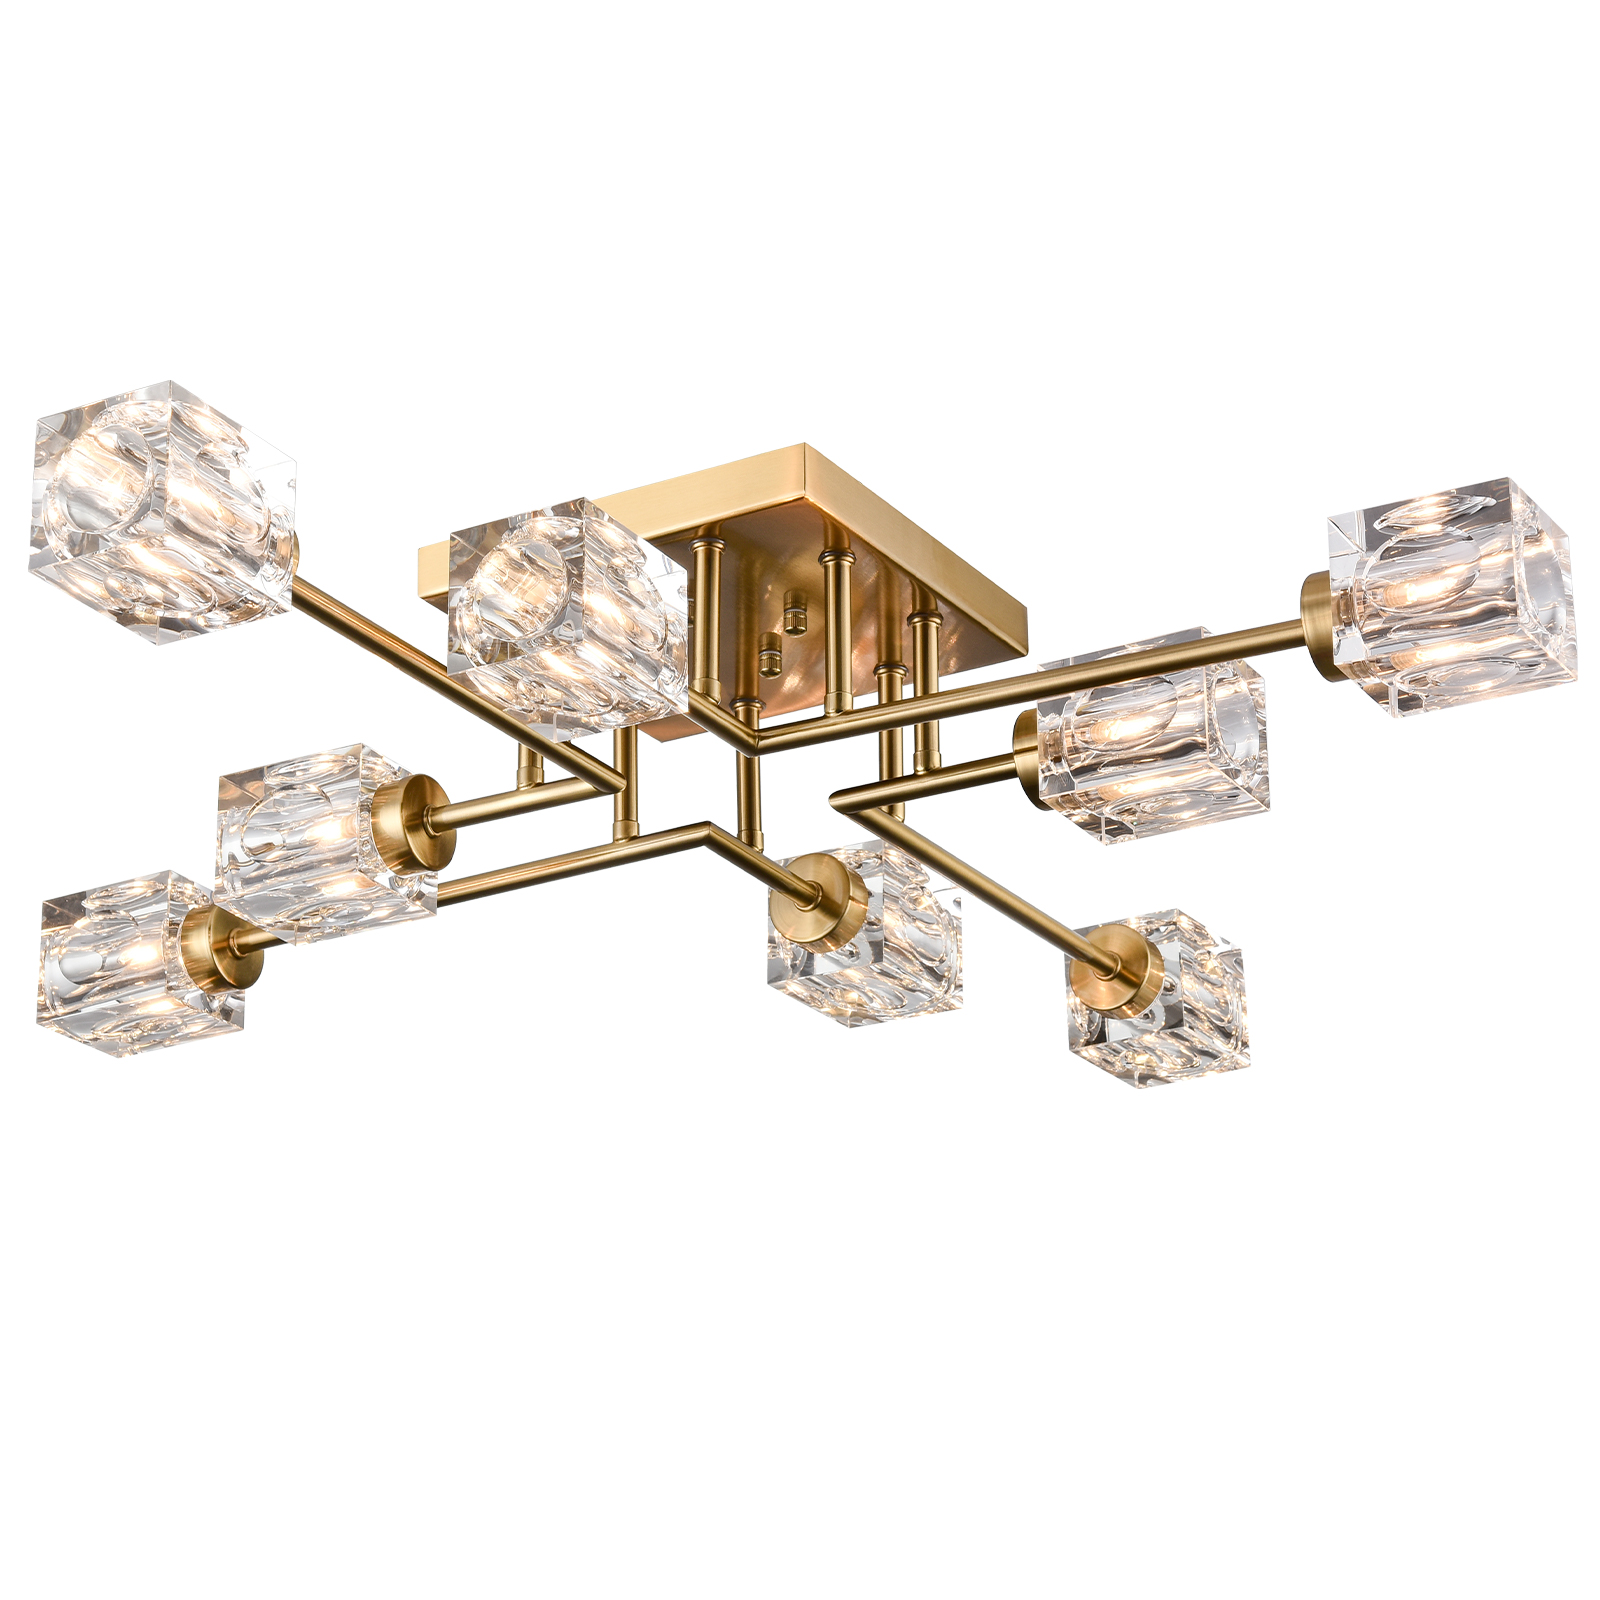 Gold Sputnik Chandelier 8-Light Crystal Ceiling Light Fixture